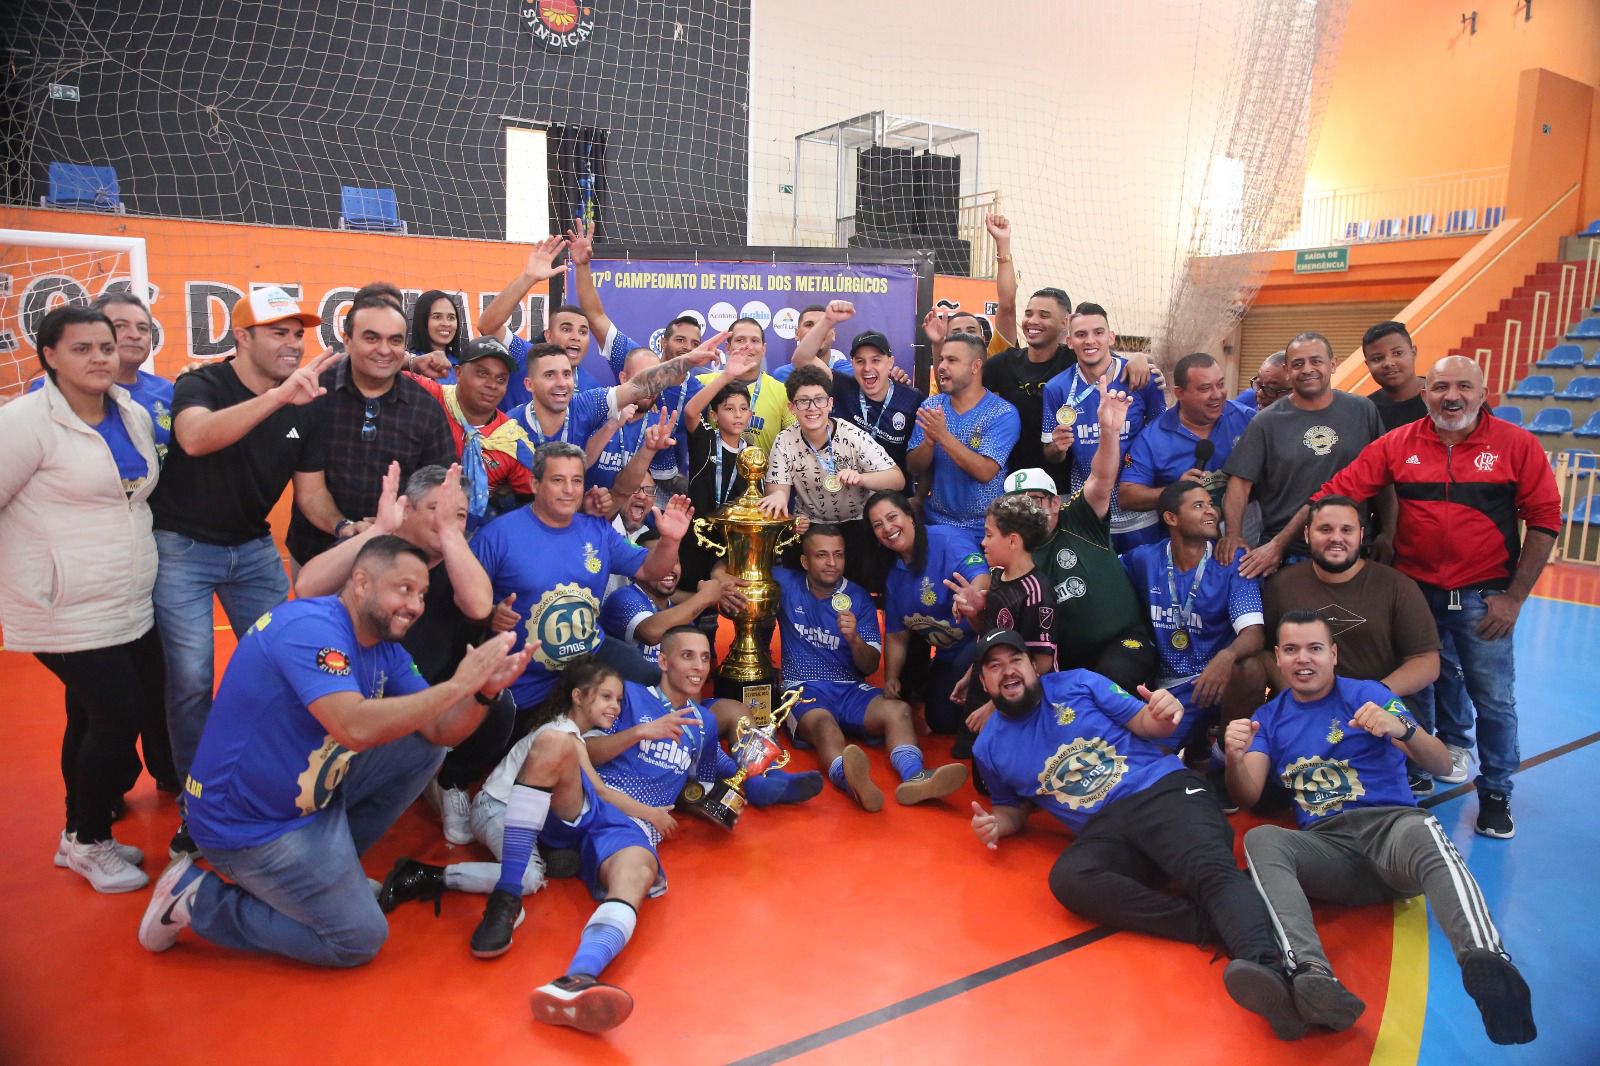 Metalúrgicos de Guarulhos: abertas as inscrições para o 18º Campeonato de Futsal